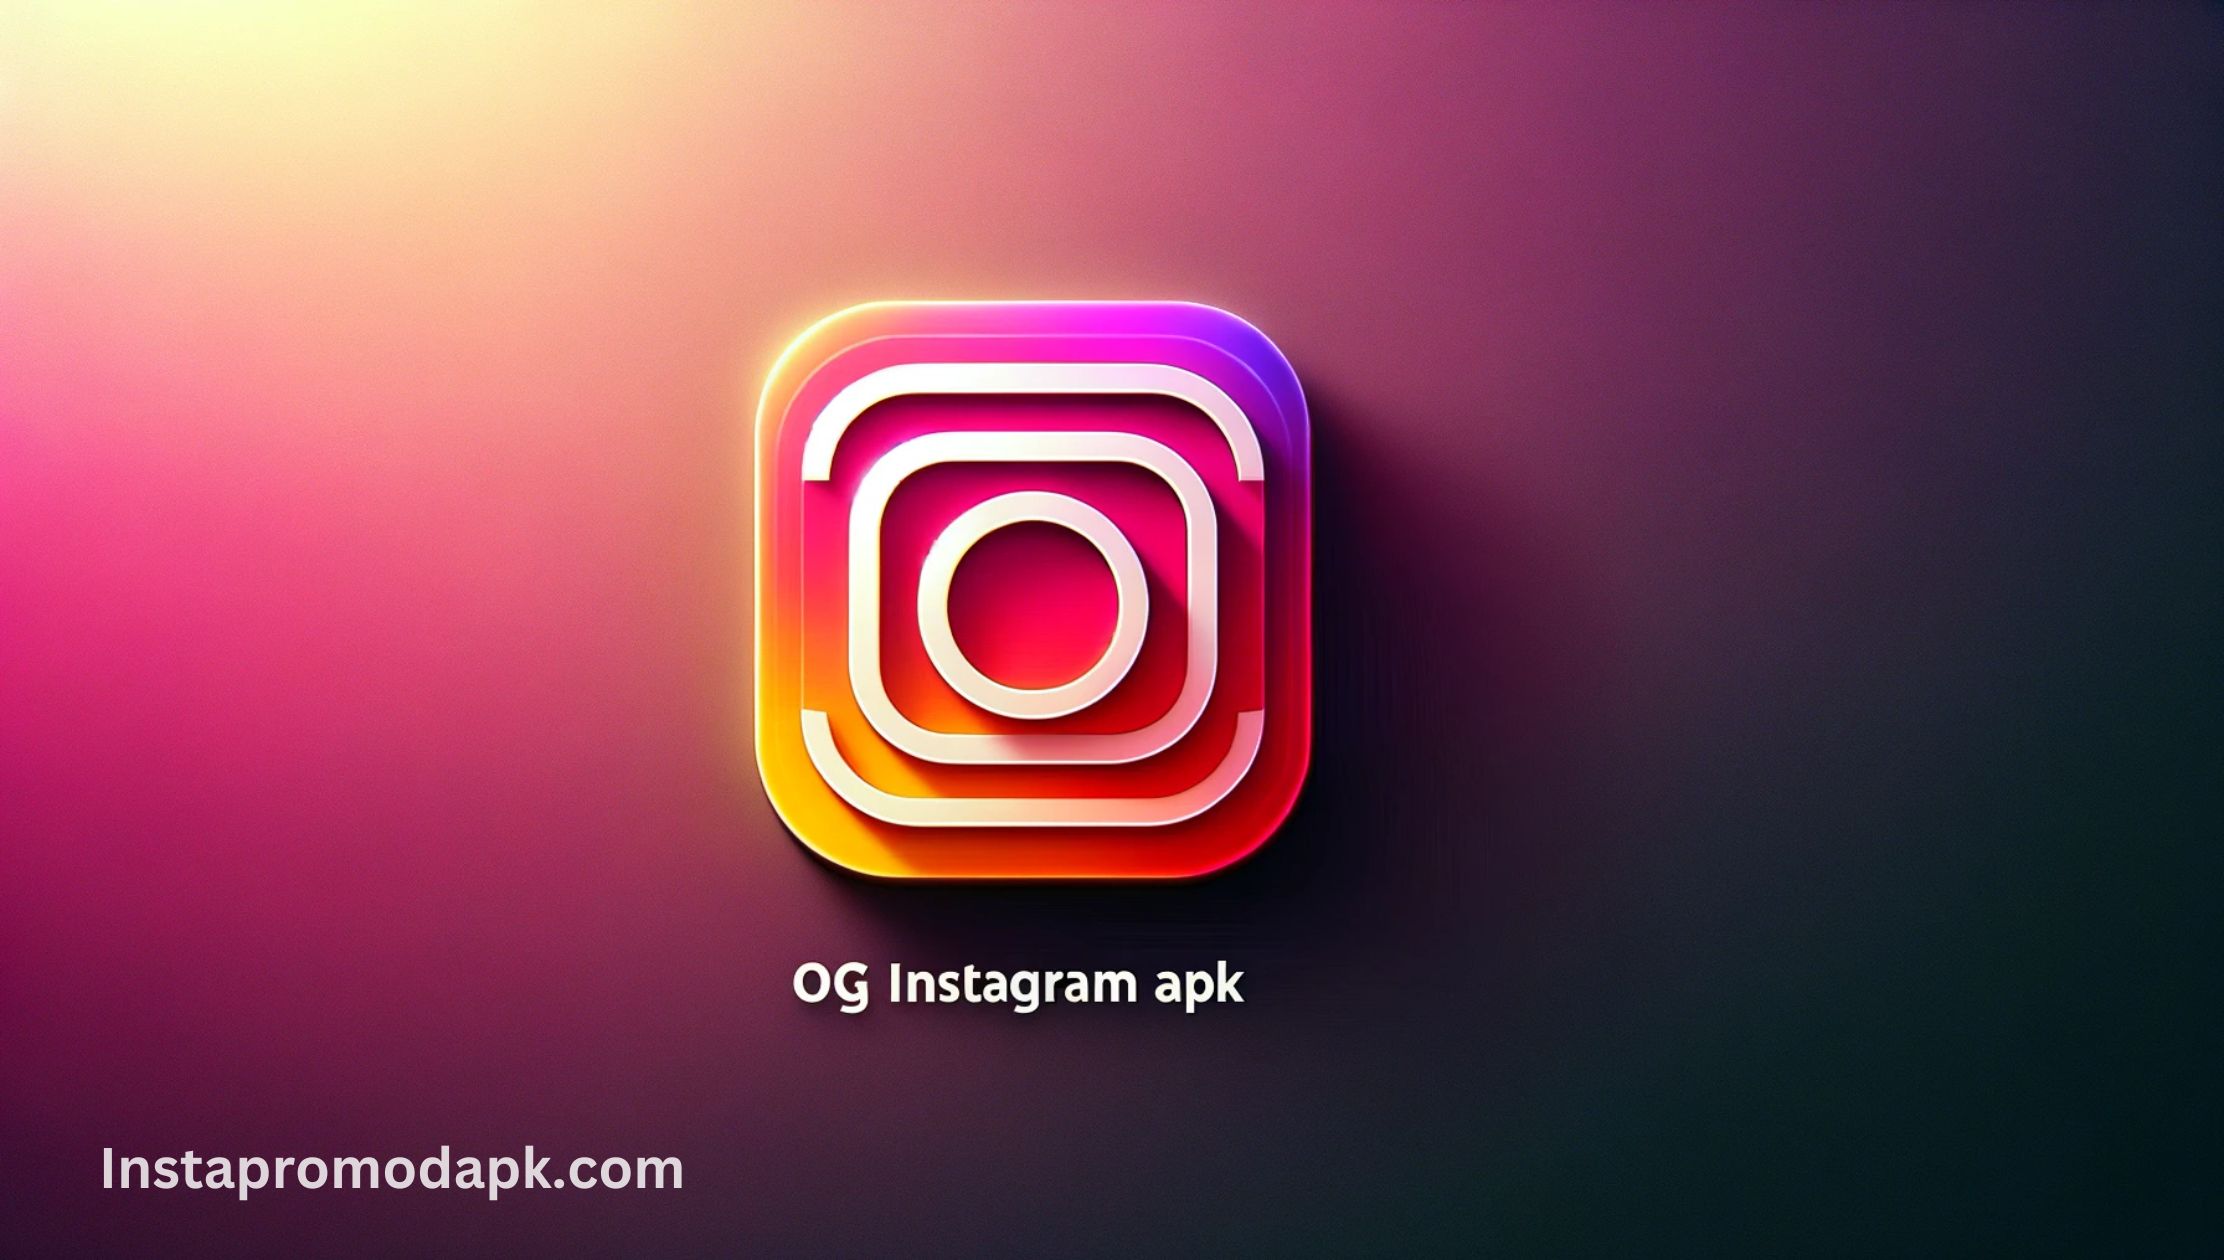 OG Instagram APK